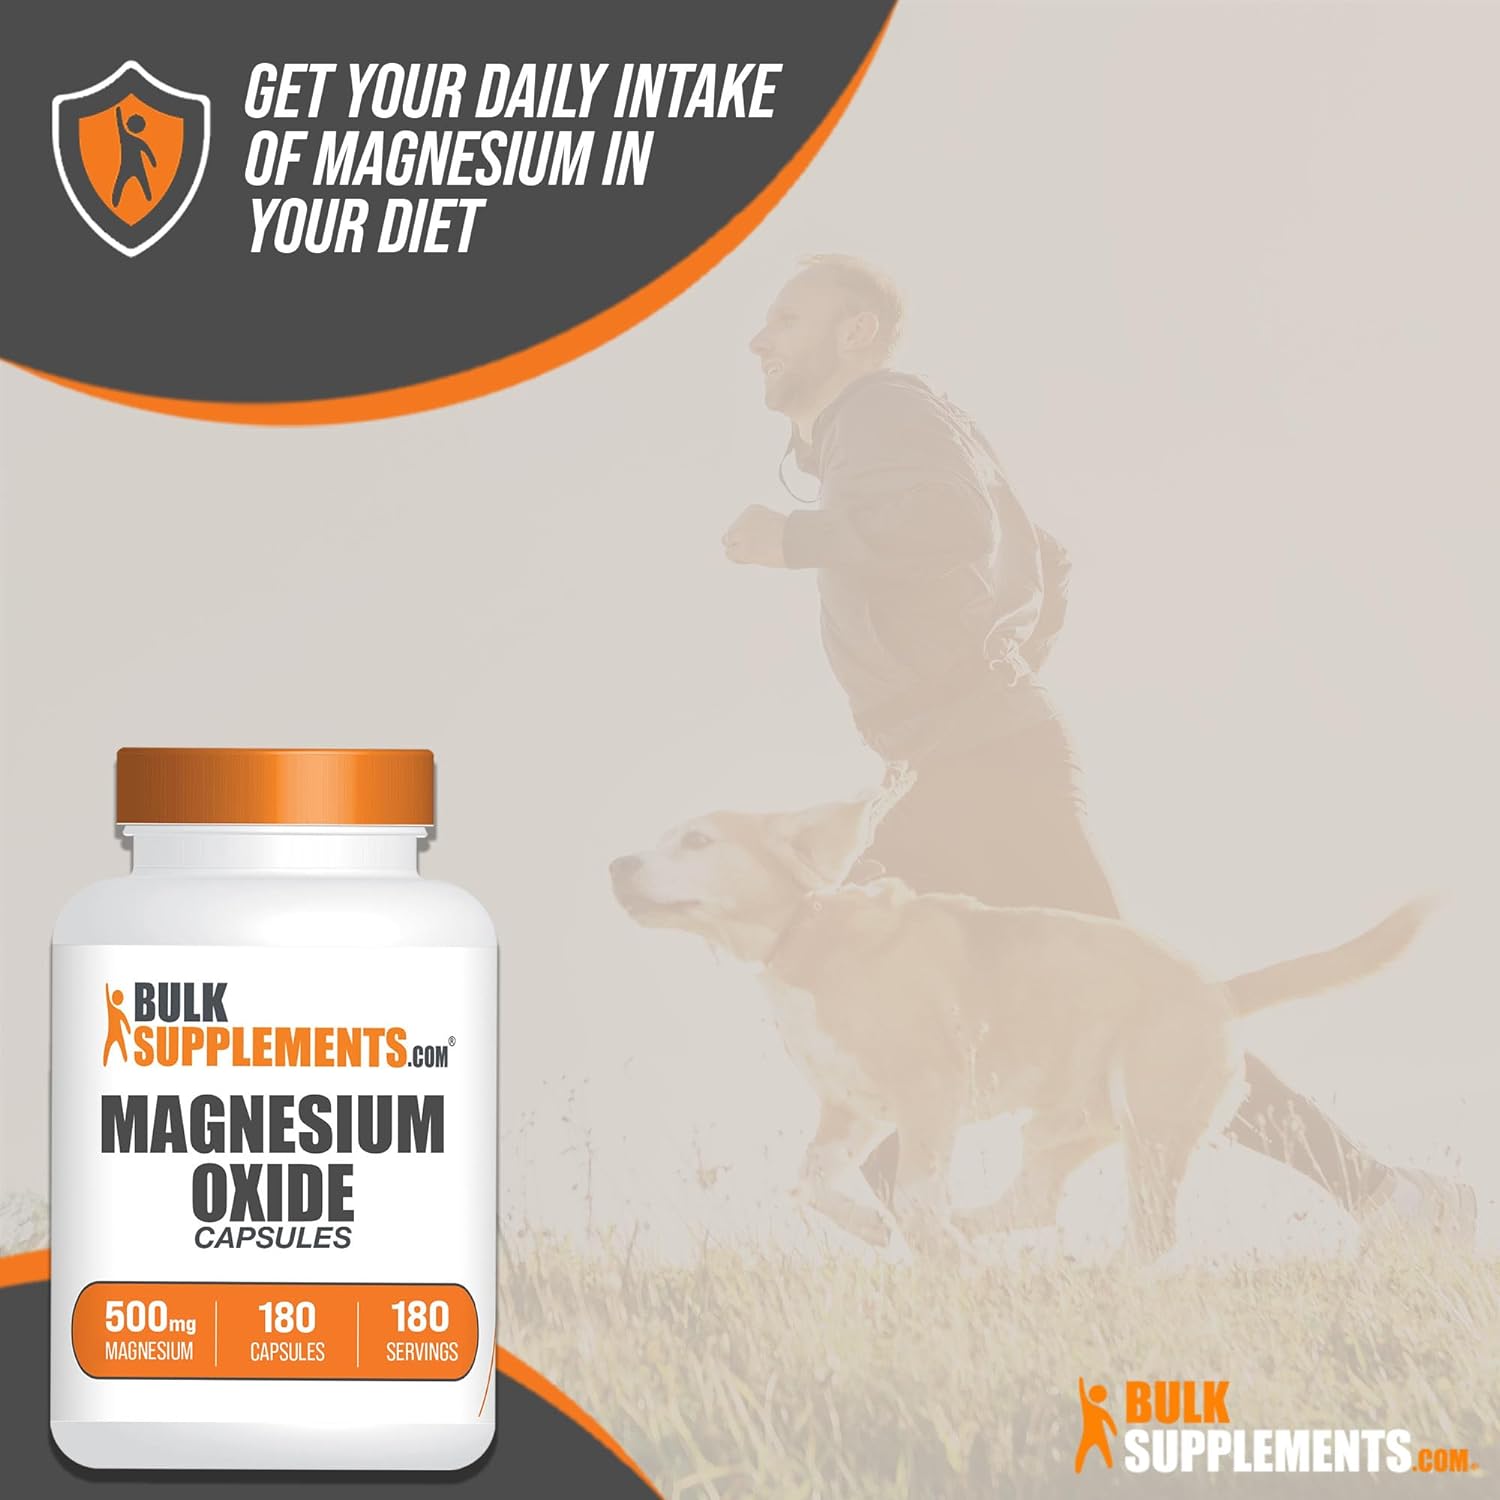 BulkSupplements.com Magnesium Oxide Capsules - Magnesium Supplement - 